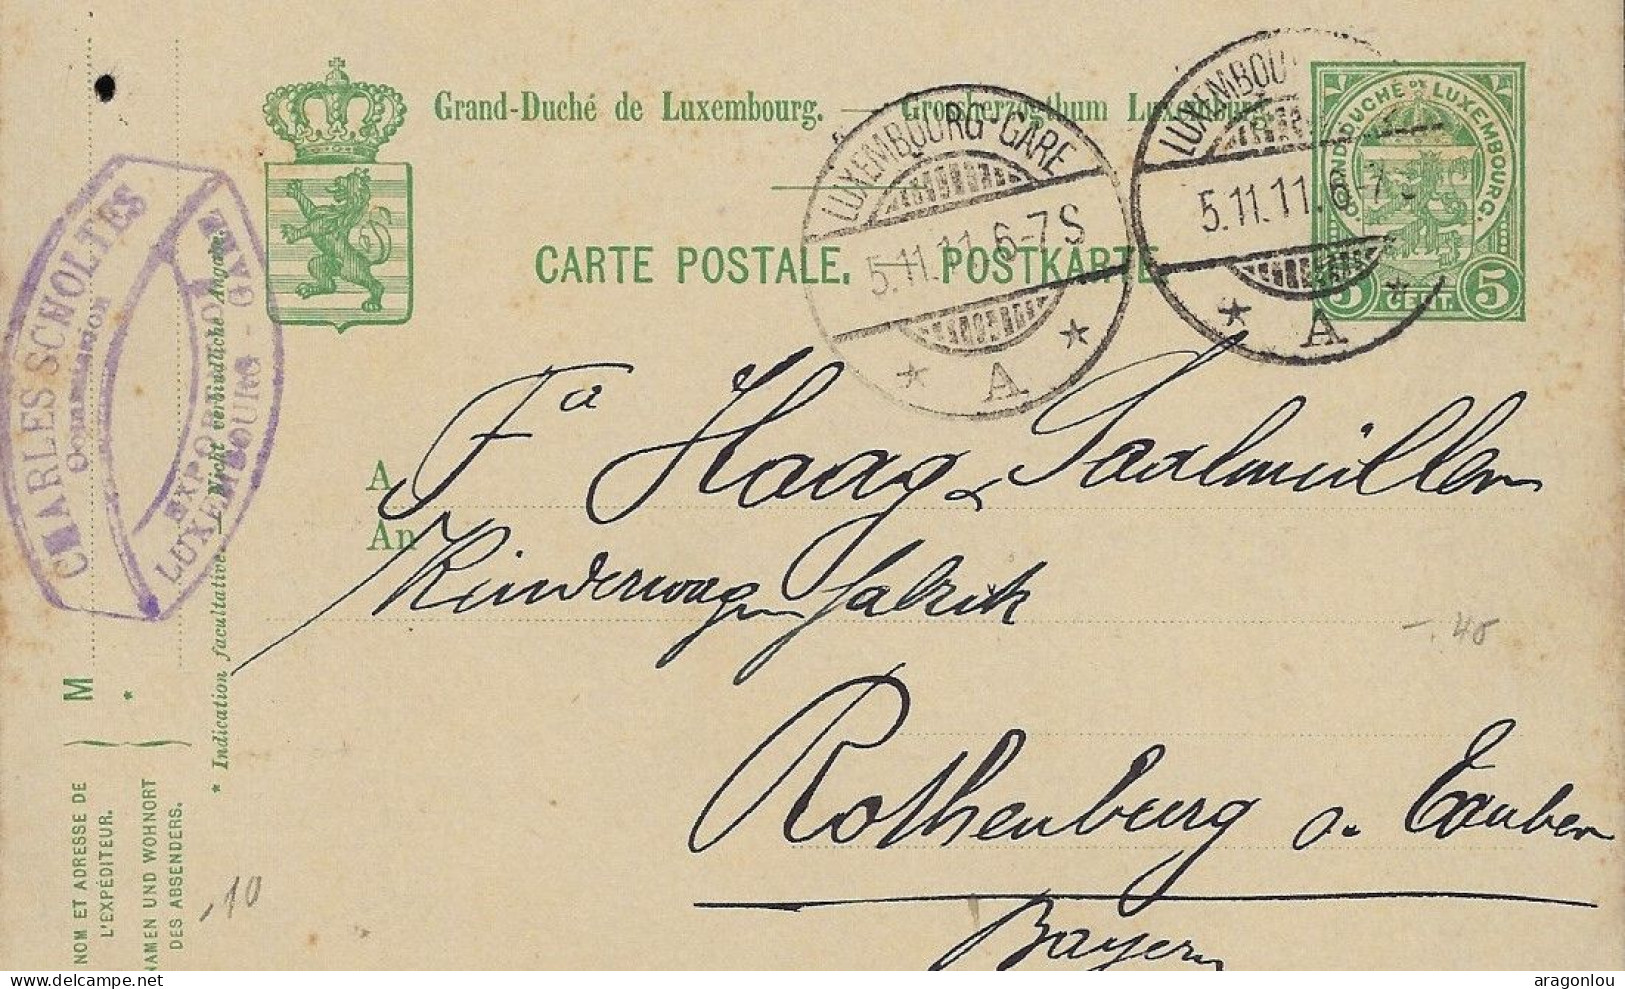 Luxembourg - Luxemburg - Carte-Postale  1911  -  Cachet  Luxembourg-Gare - Postwaardestukken